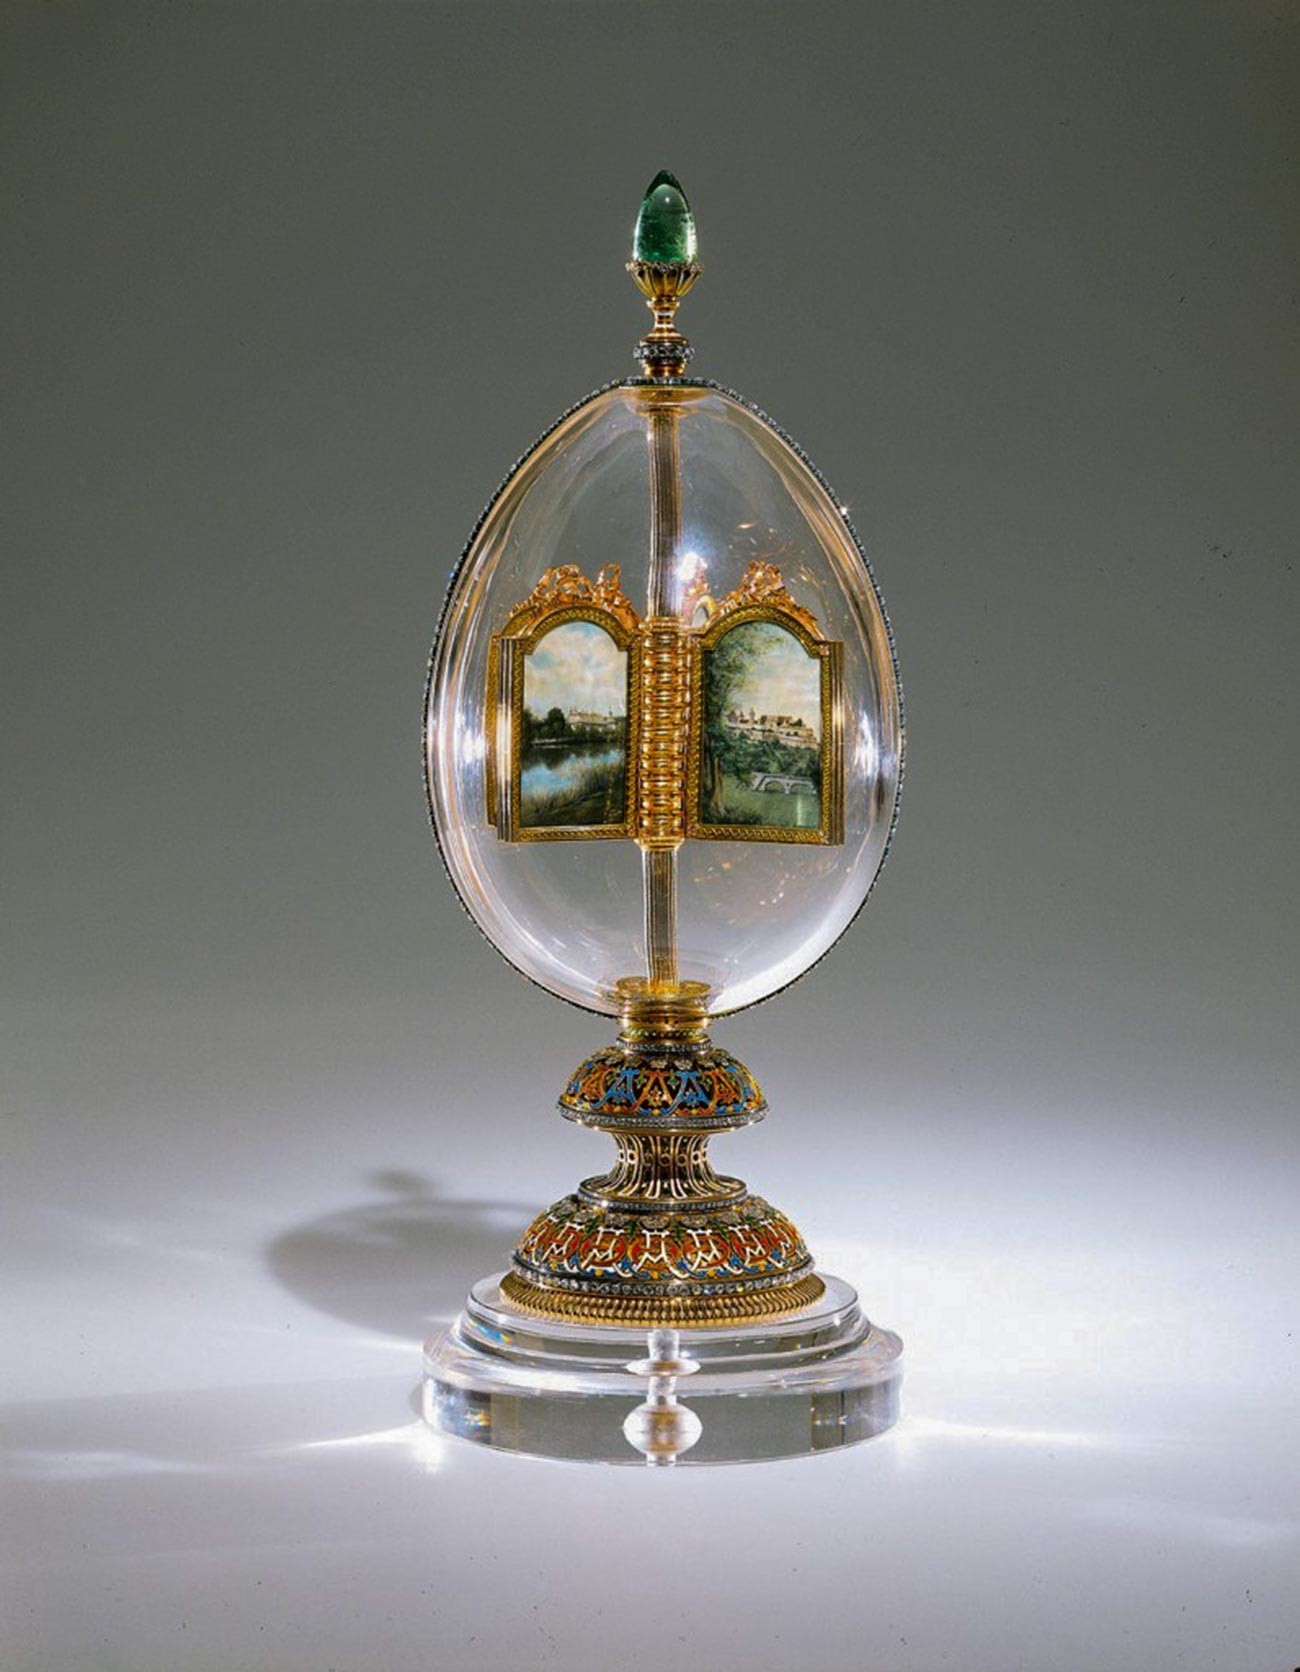 Ovo Fabergé de miniaturas giratórias.
